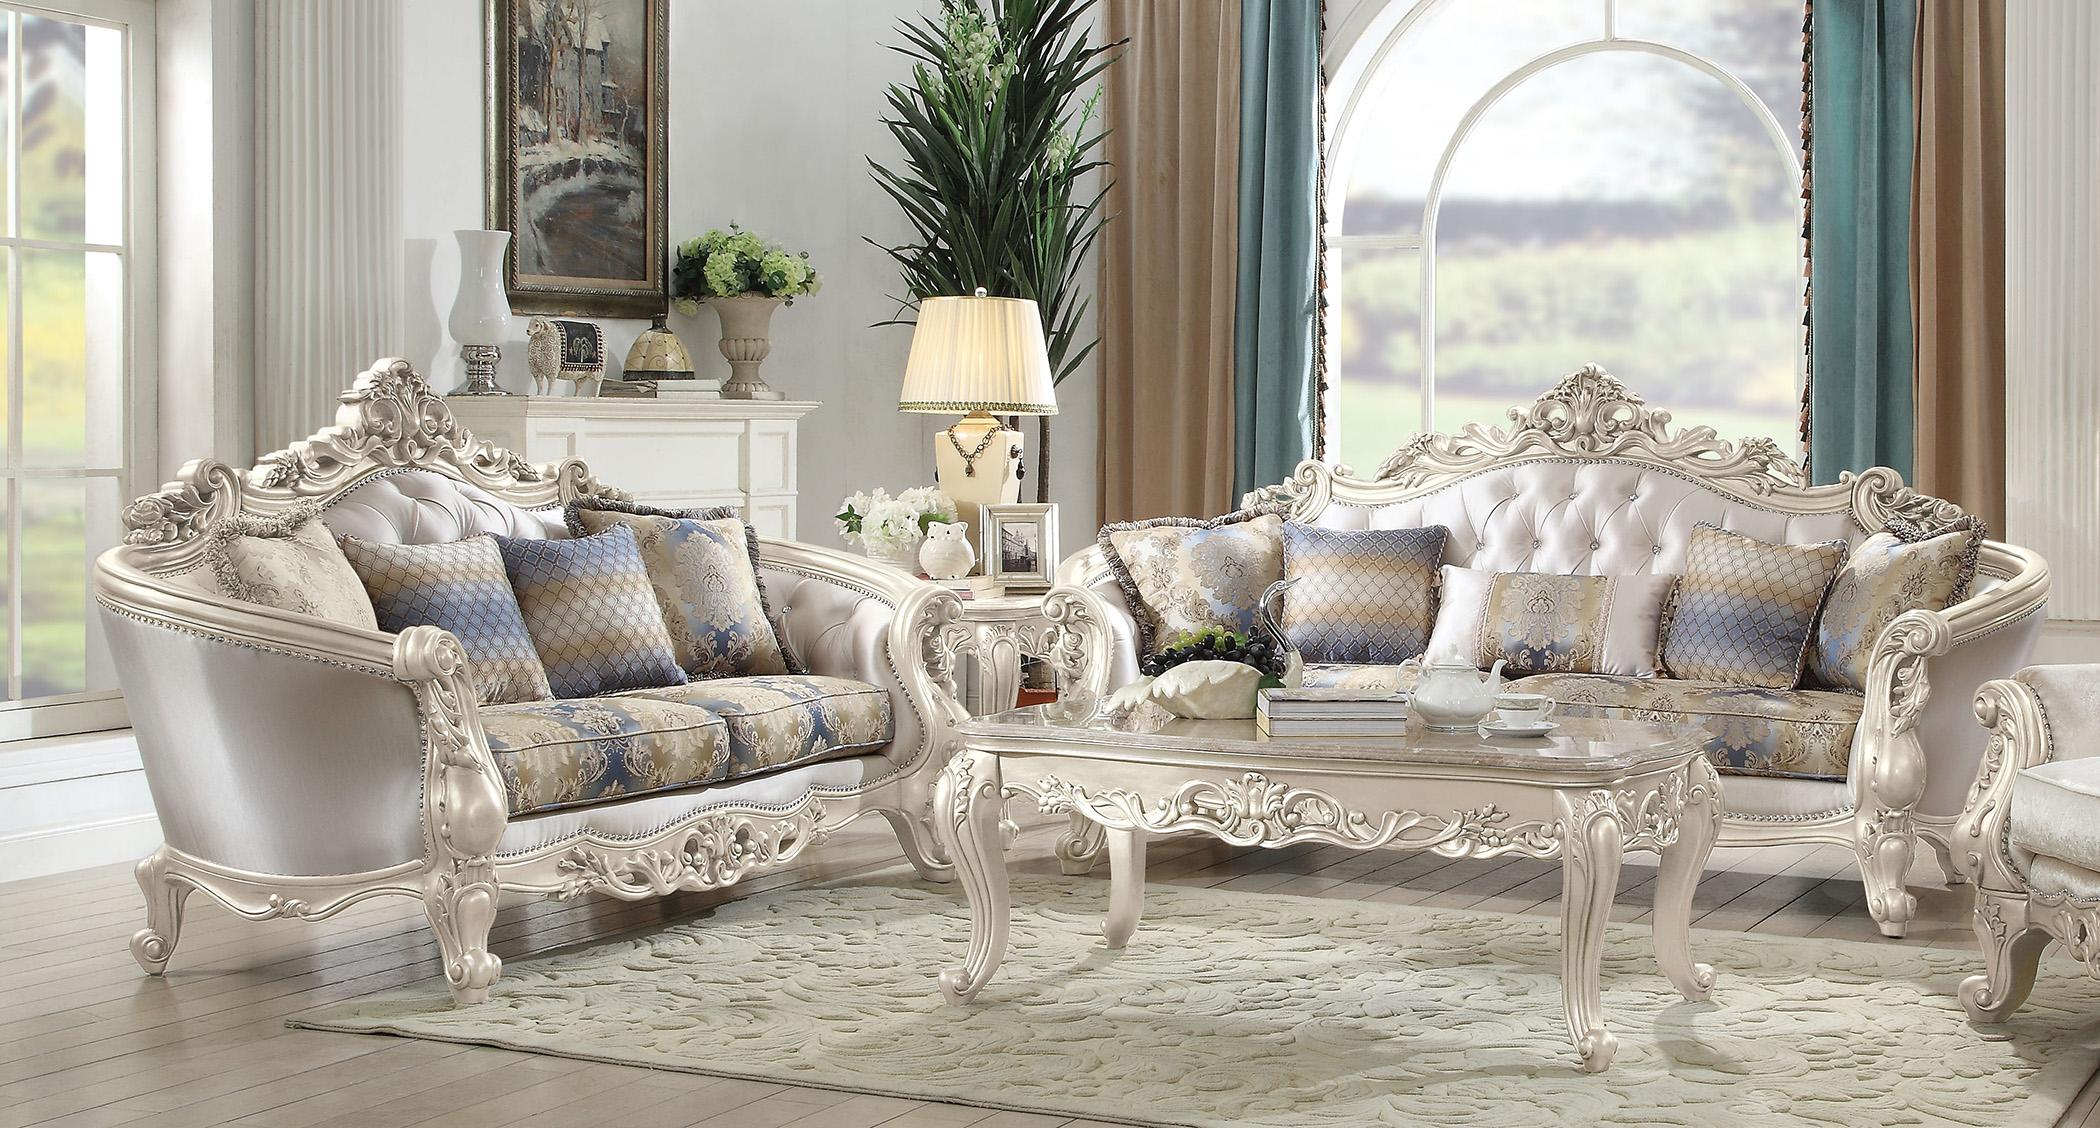 

        
Acme Furniture Gorsedd-52441 Loveseat Antique White/Cream Fabric 0840412173127
